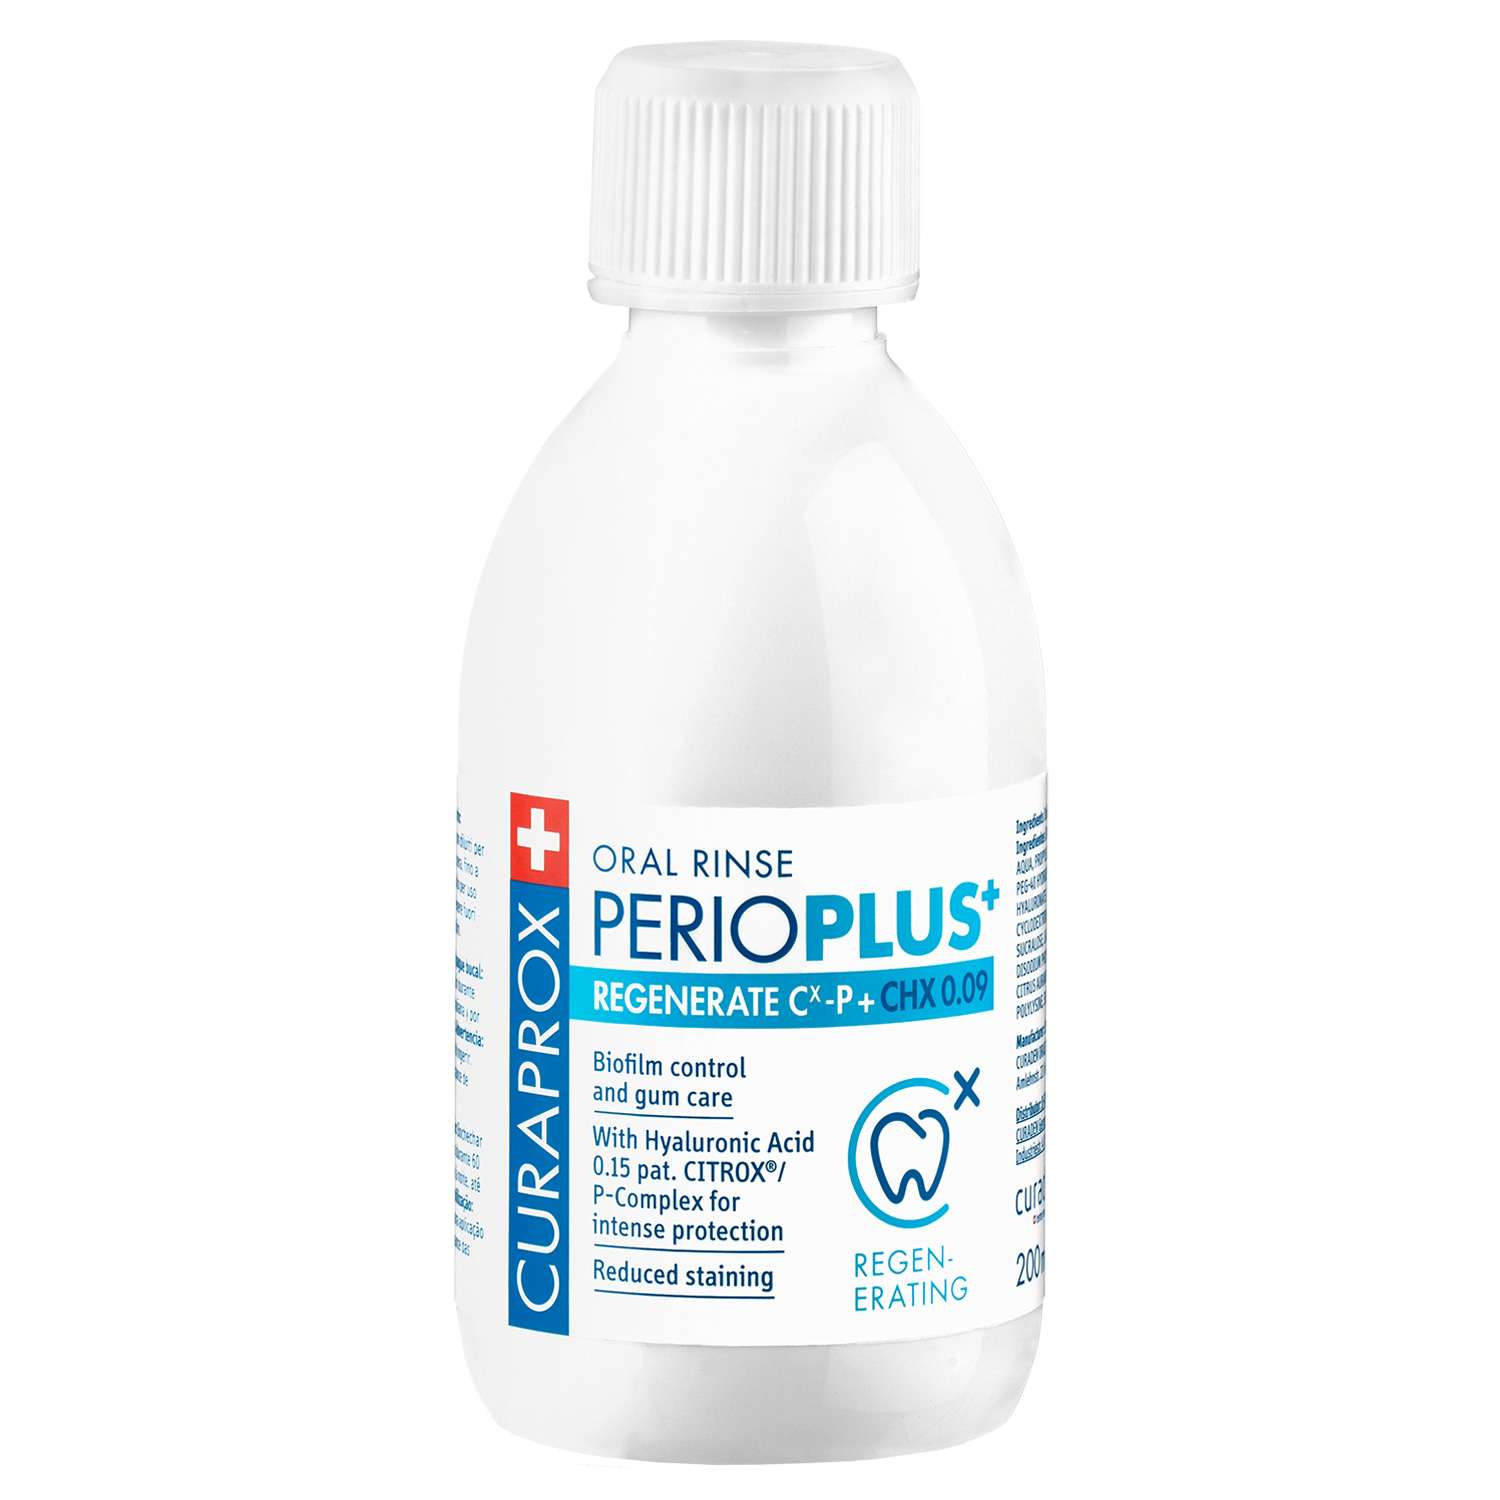 Жидкость-ополаскиватель Curaprox Perio Plus Regenerate CHX 0.09% и гиалуроновая кислота - фото 2